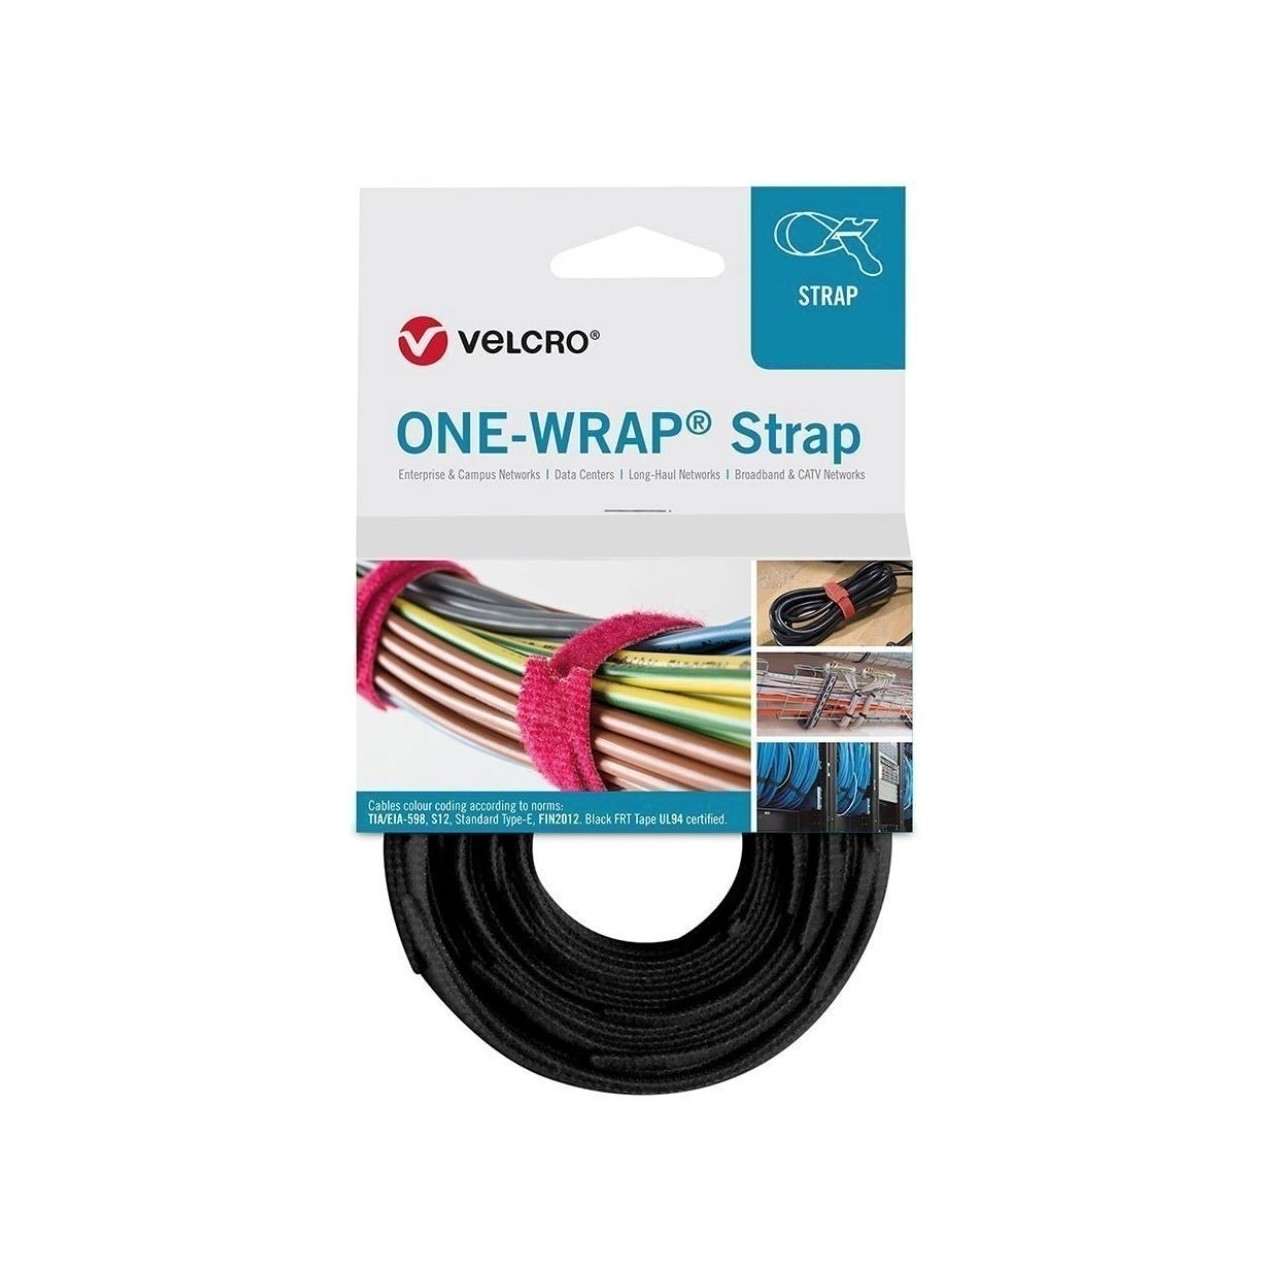 Velcro cinta one-wrap fibra optica negra